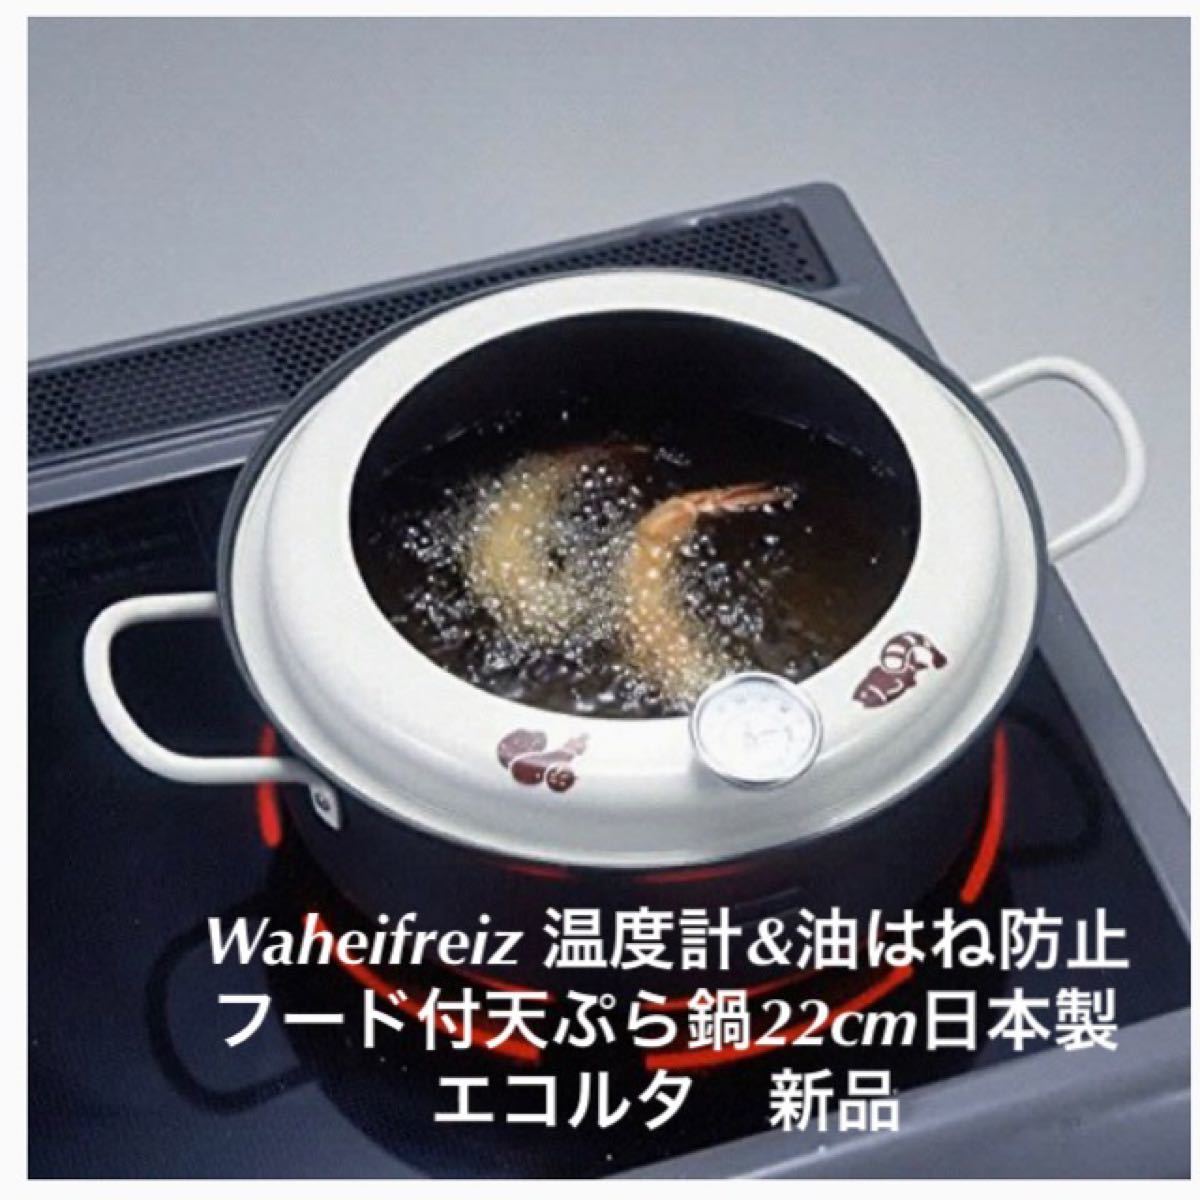 Waheifreiz 揚げごろがひと目でわかる温度計&油はね防止フード付 天ぷら鍋 22cm 日本製 エコルタ 新品　